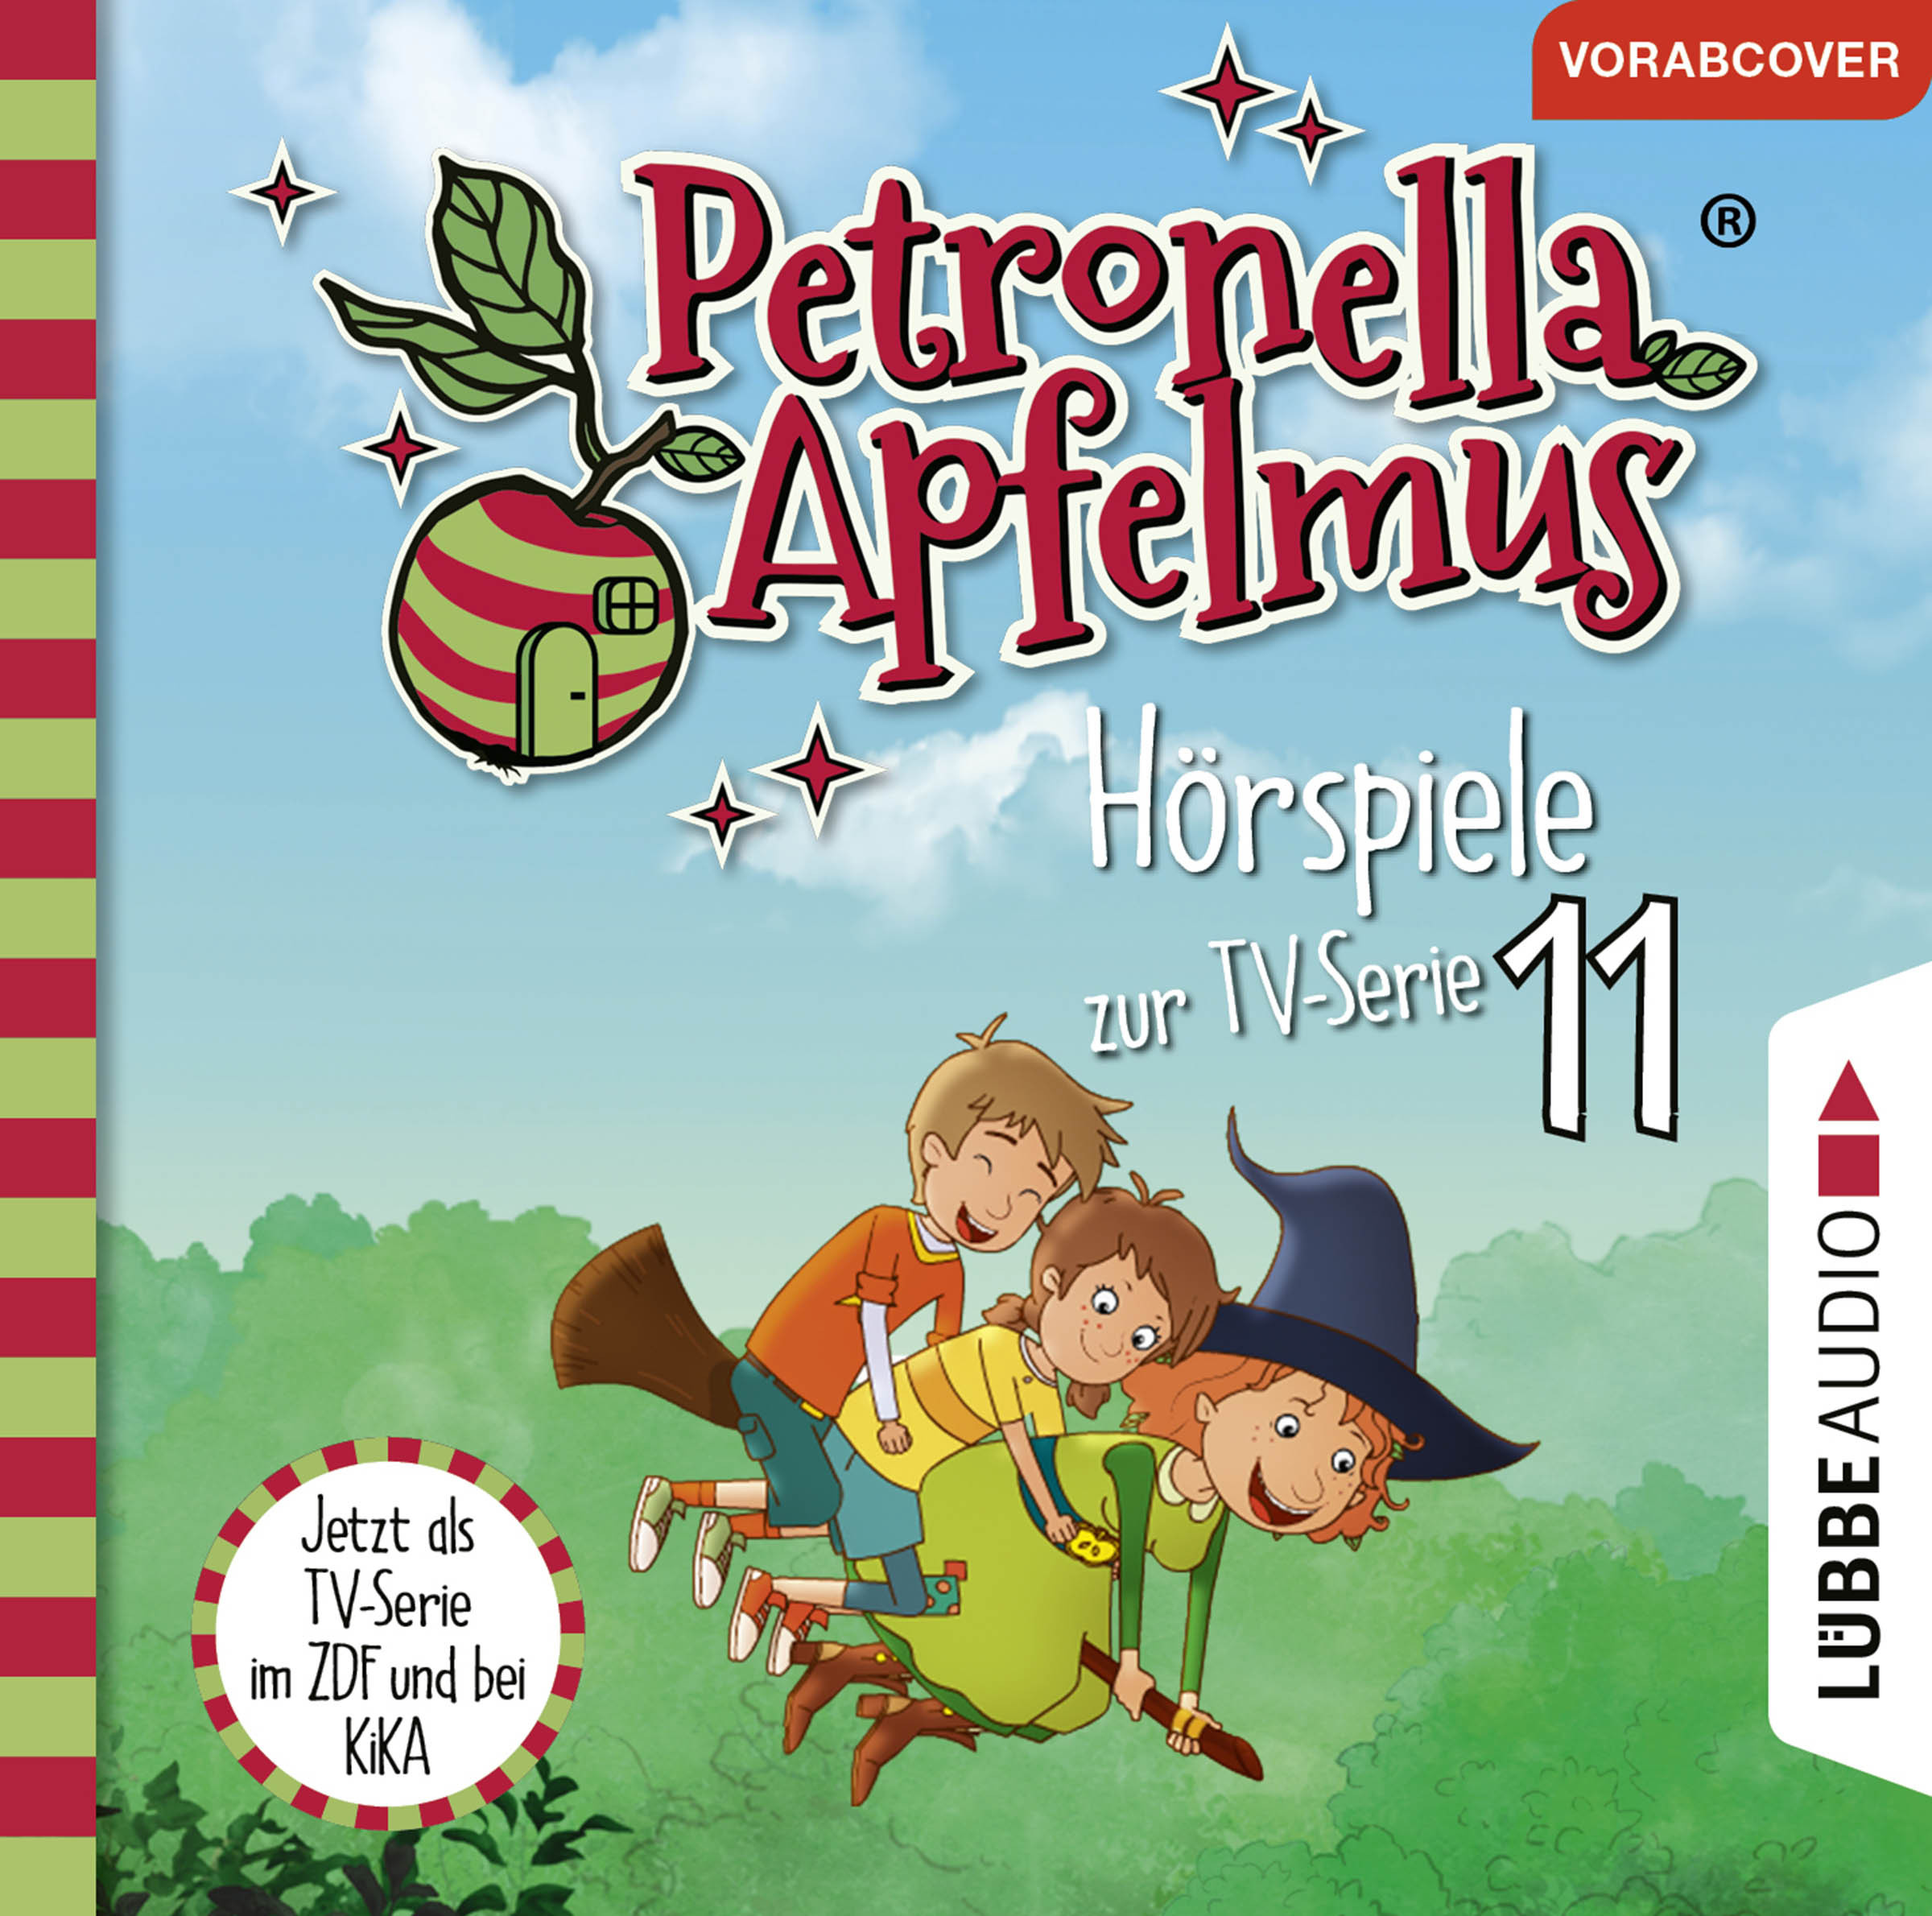 Petronella Apfelmus - Hörspiele zur TV-Serie 11